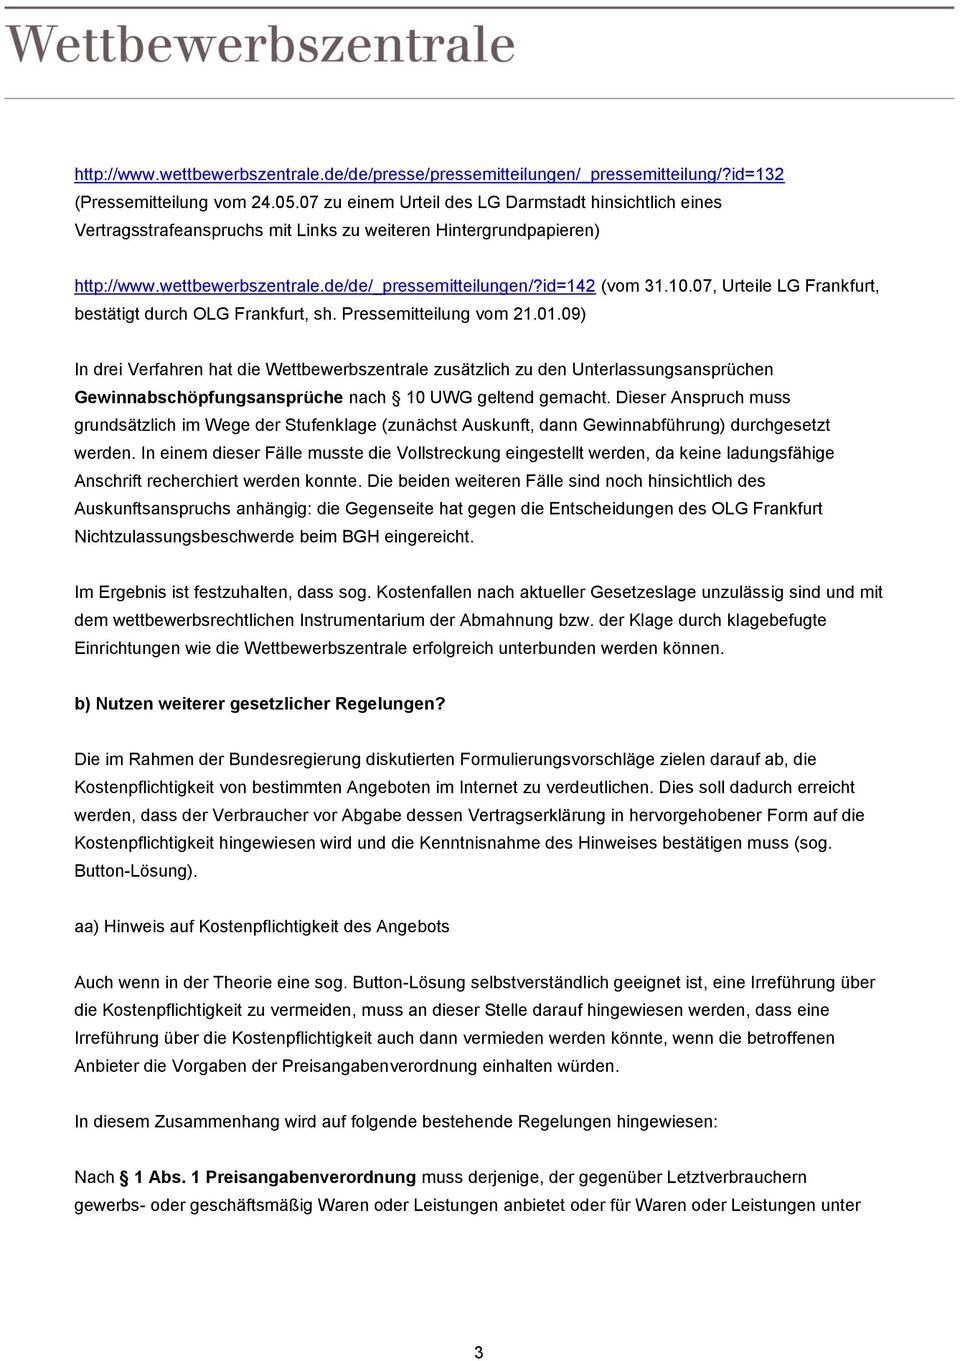 07, Urteile LG Frankfurt, bestätigt durch OLG Frankfurt, sh. Pressemitteilung vom 21.01.